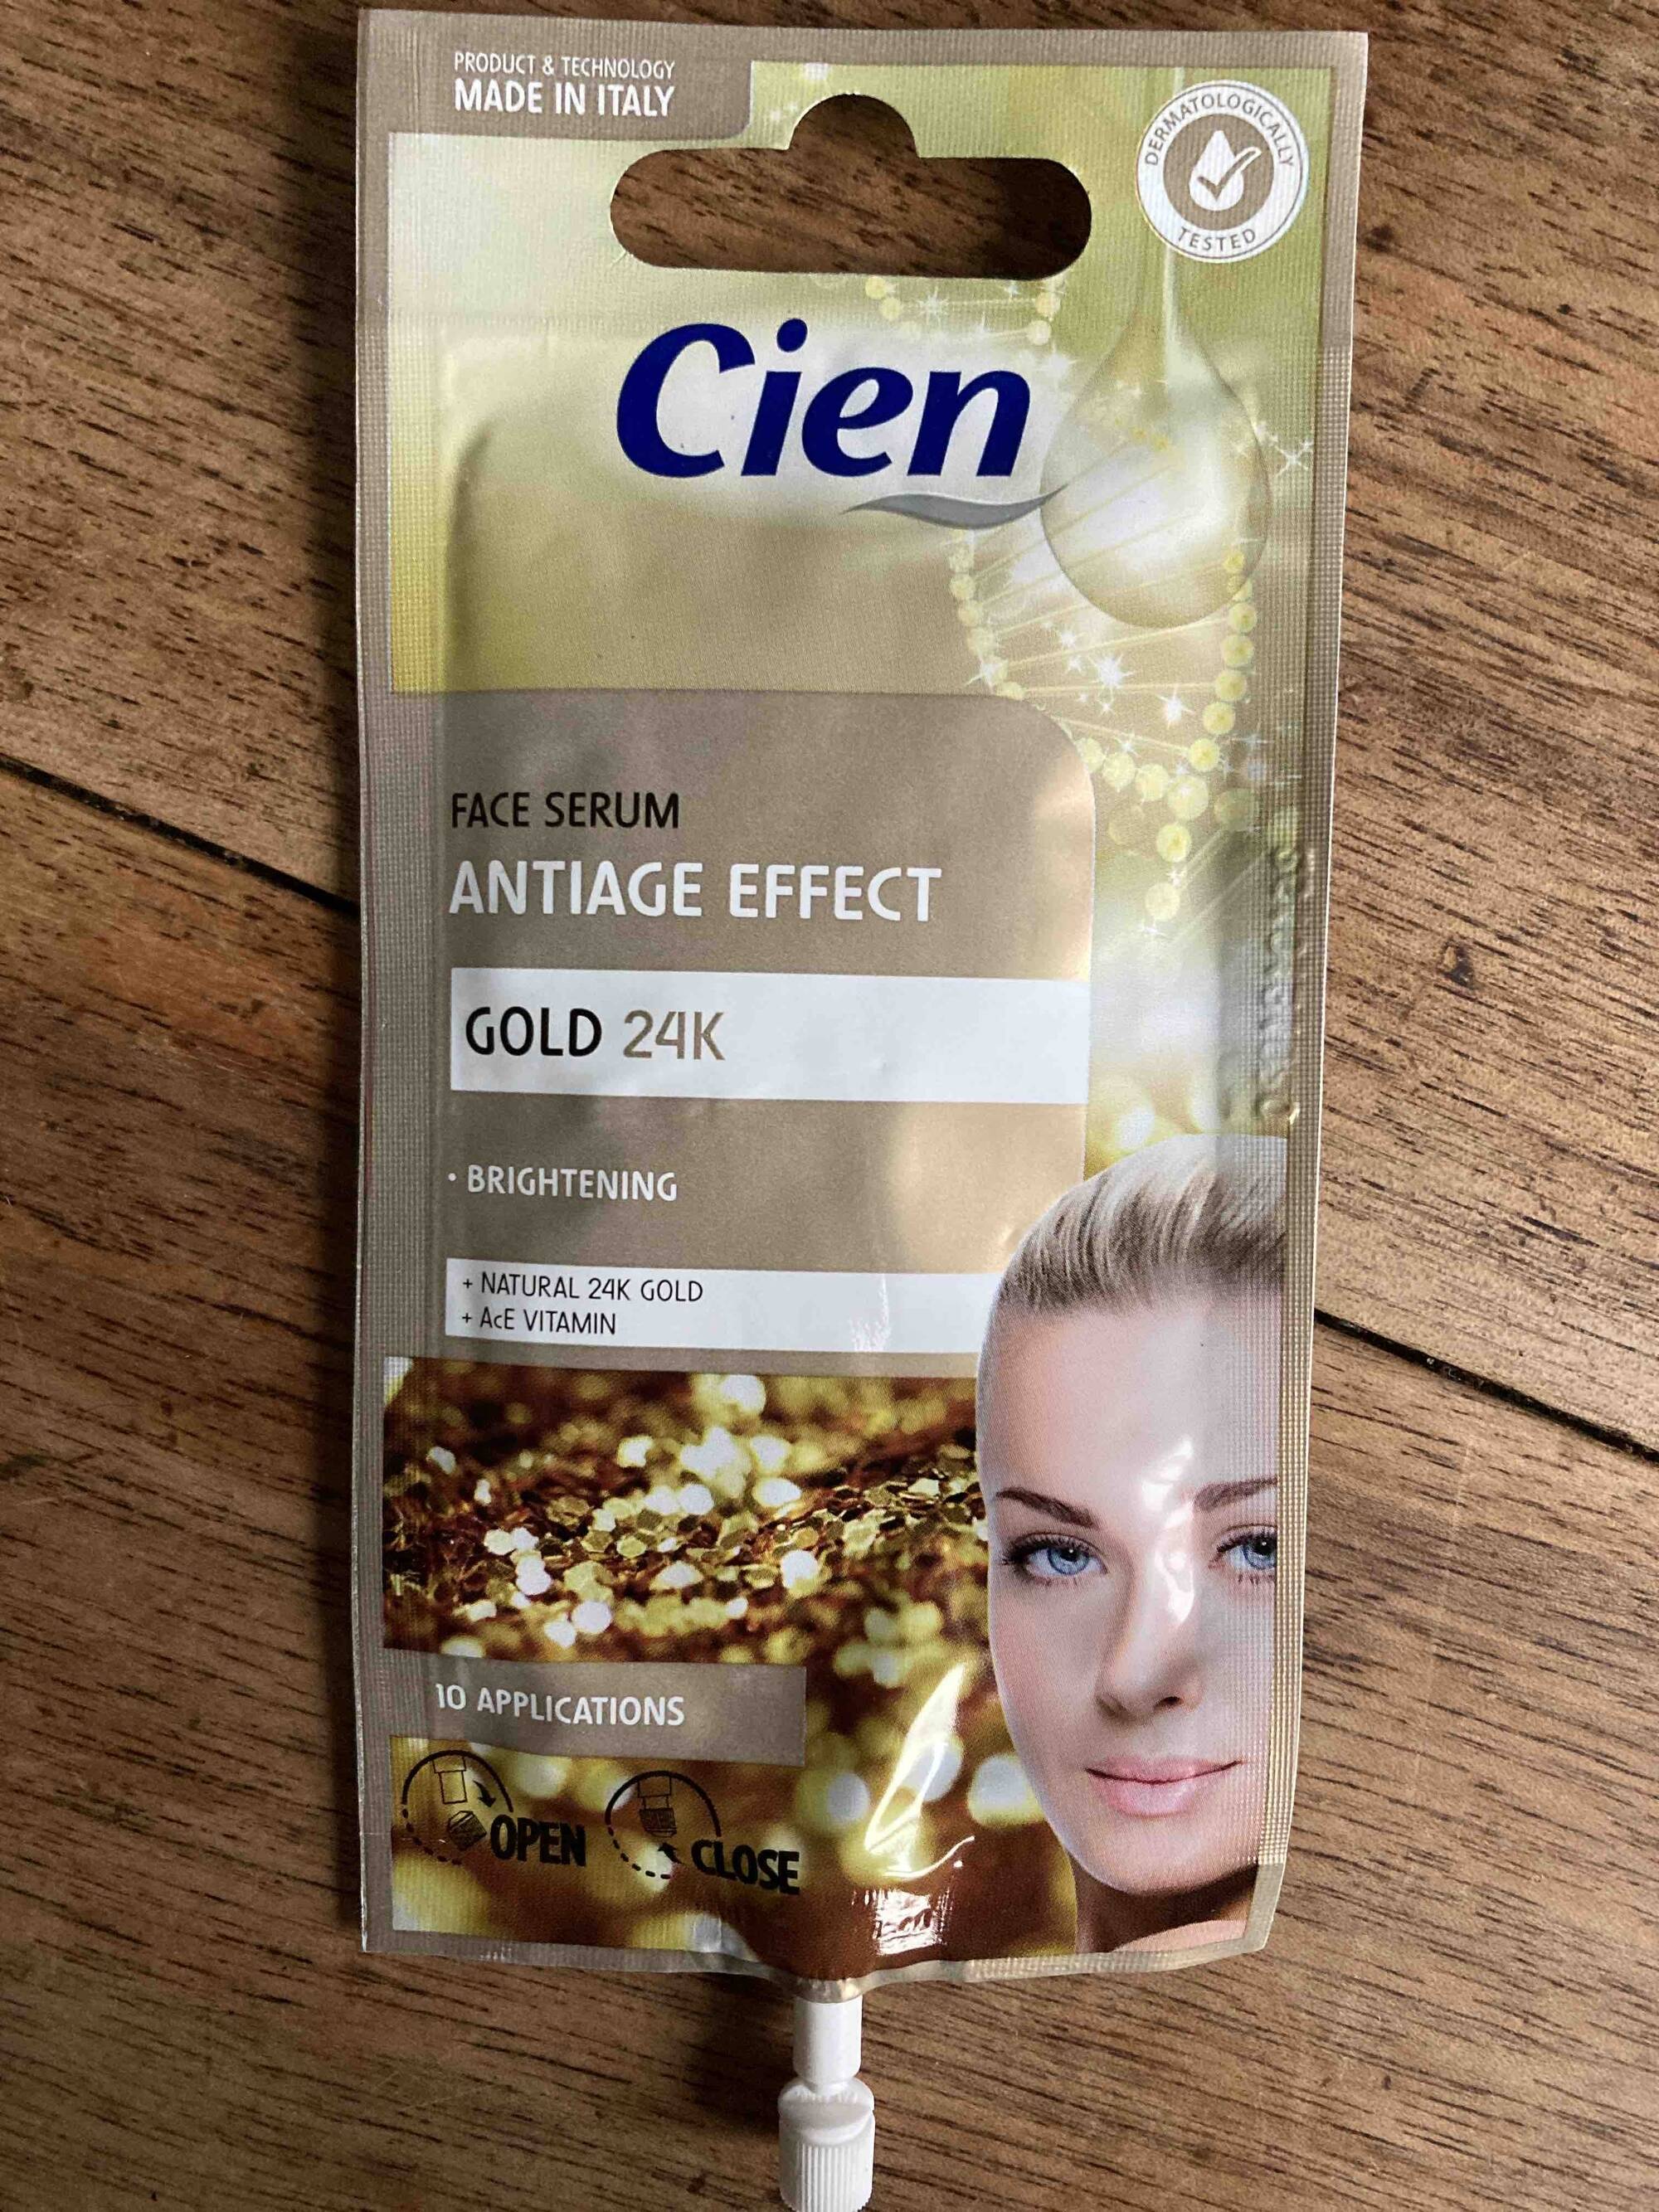 CIEN - Face serum antiage effect gold 24k